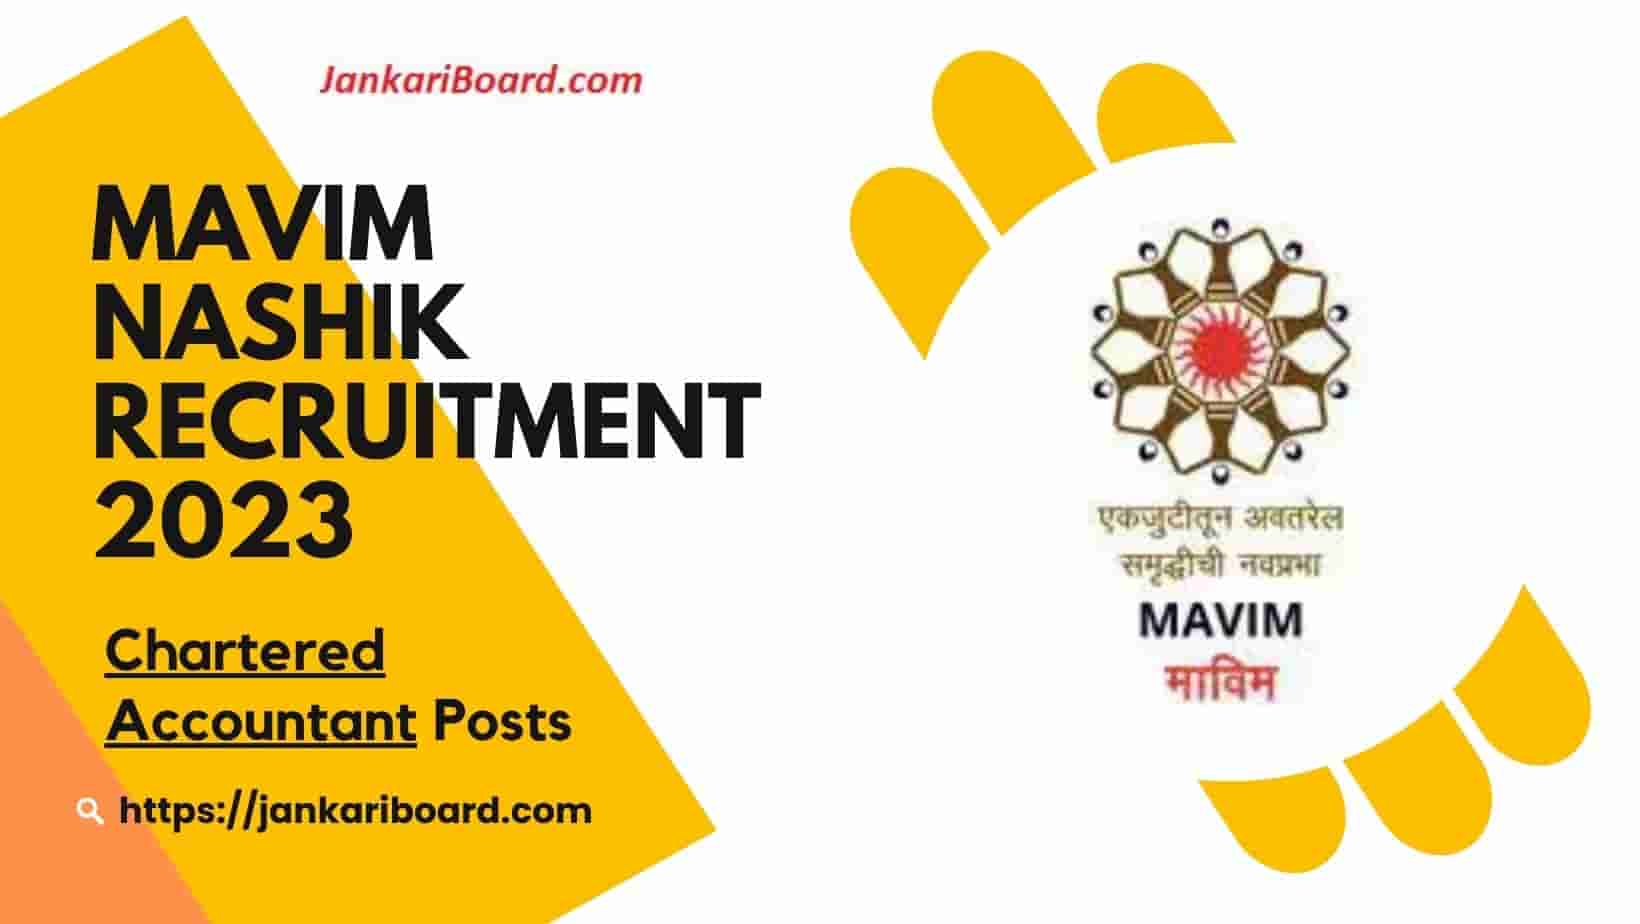 MAVIM Nashik Recruitment 2023